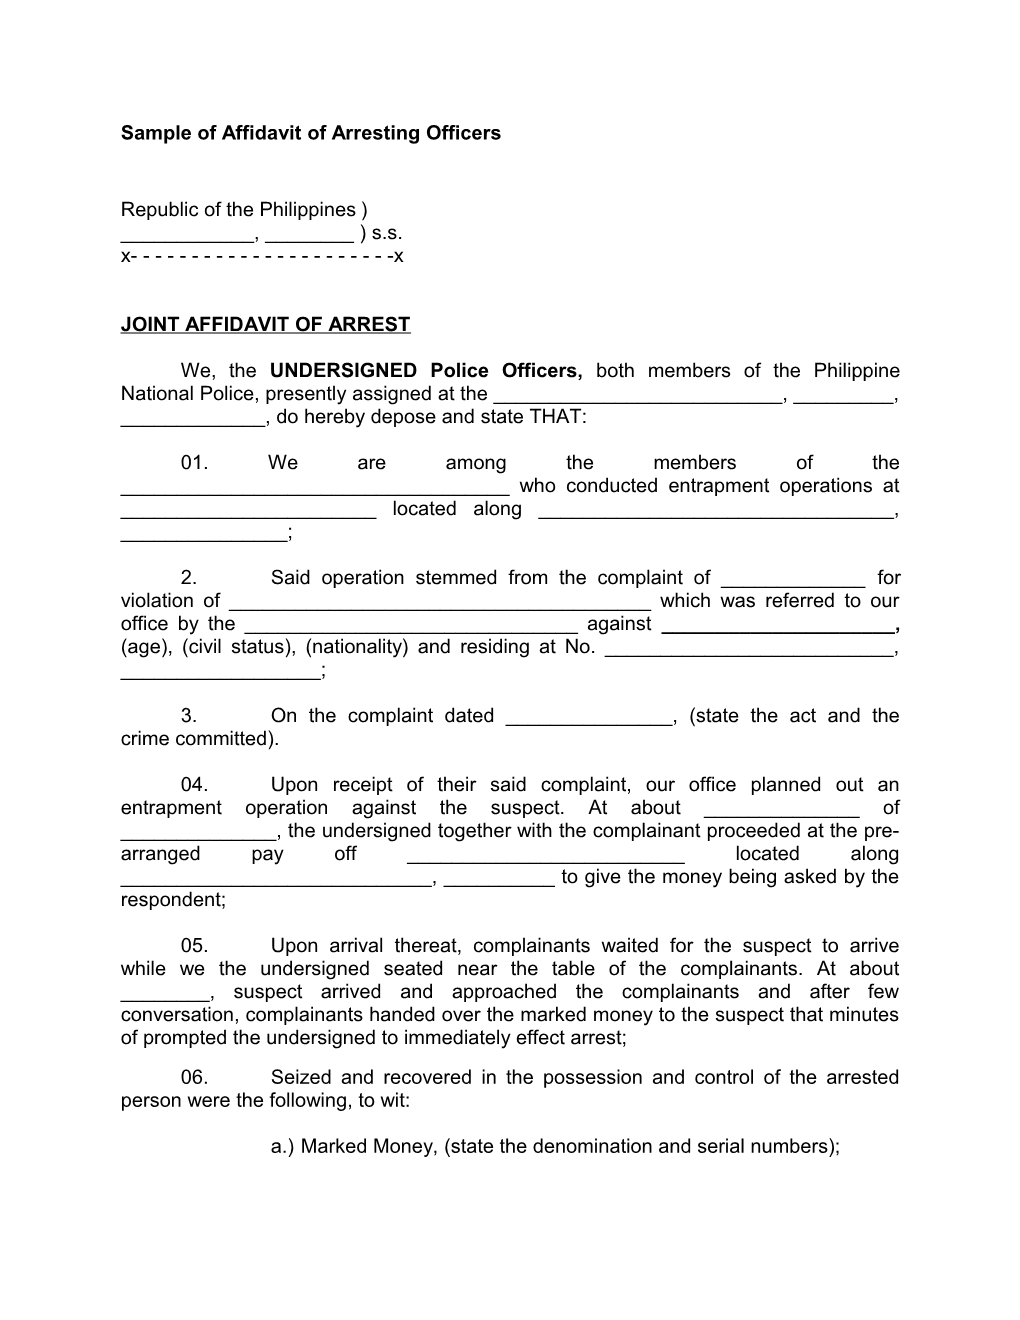 Sample of Affidavit of Arresting Officers